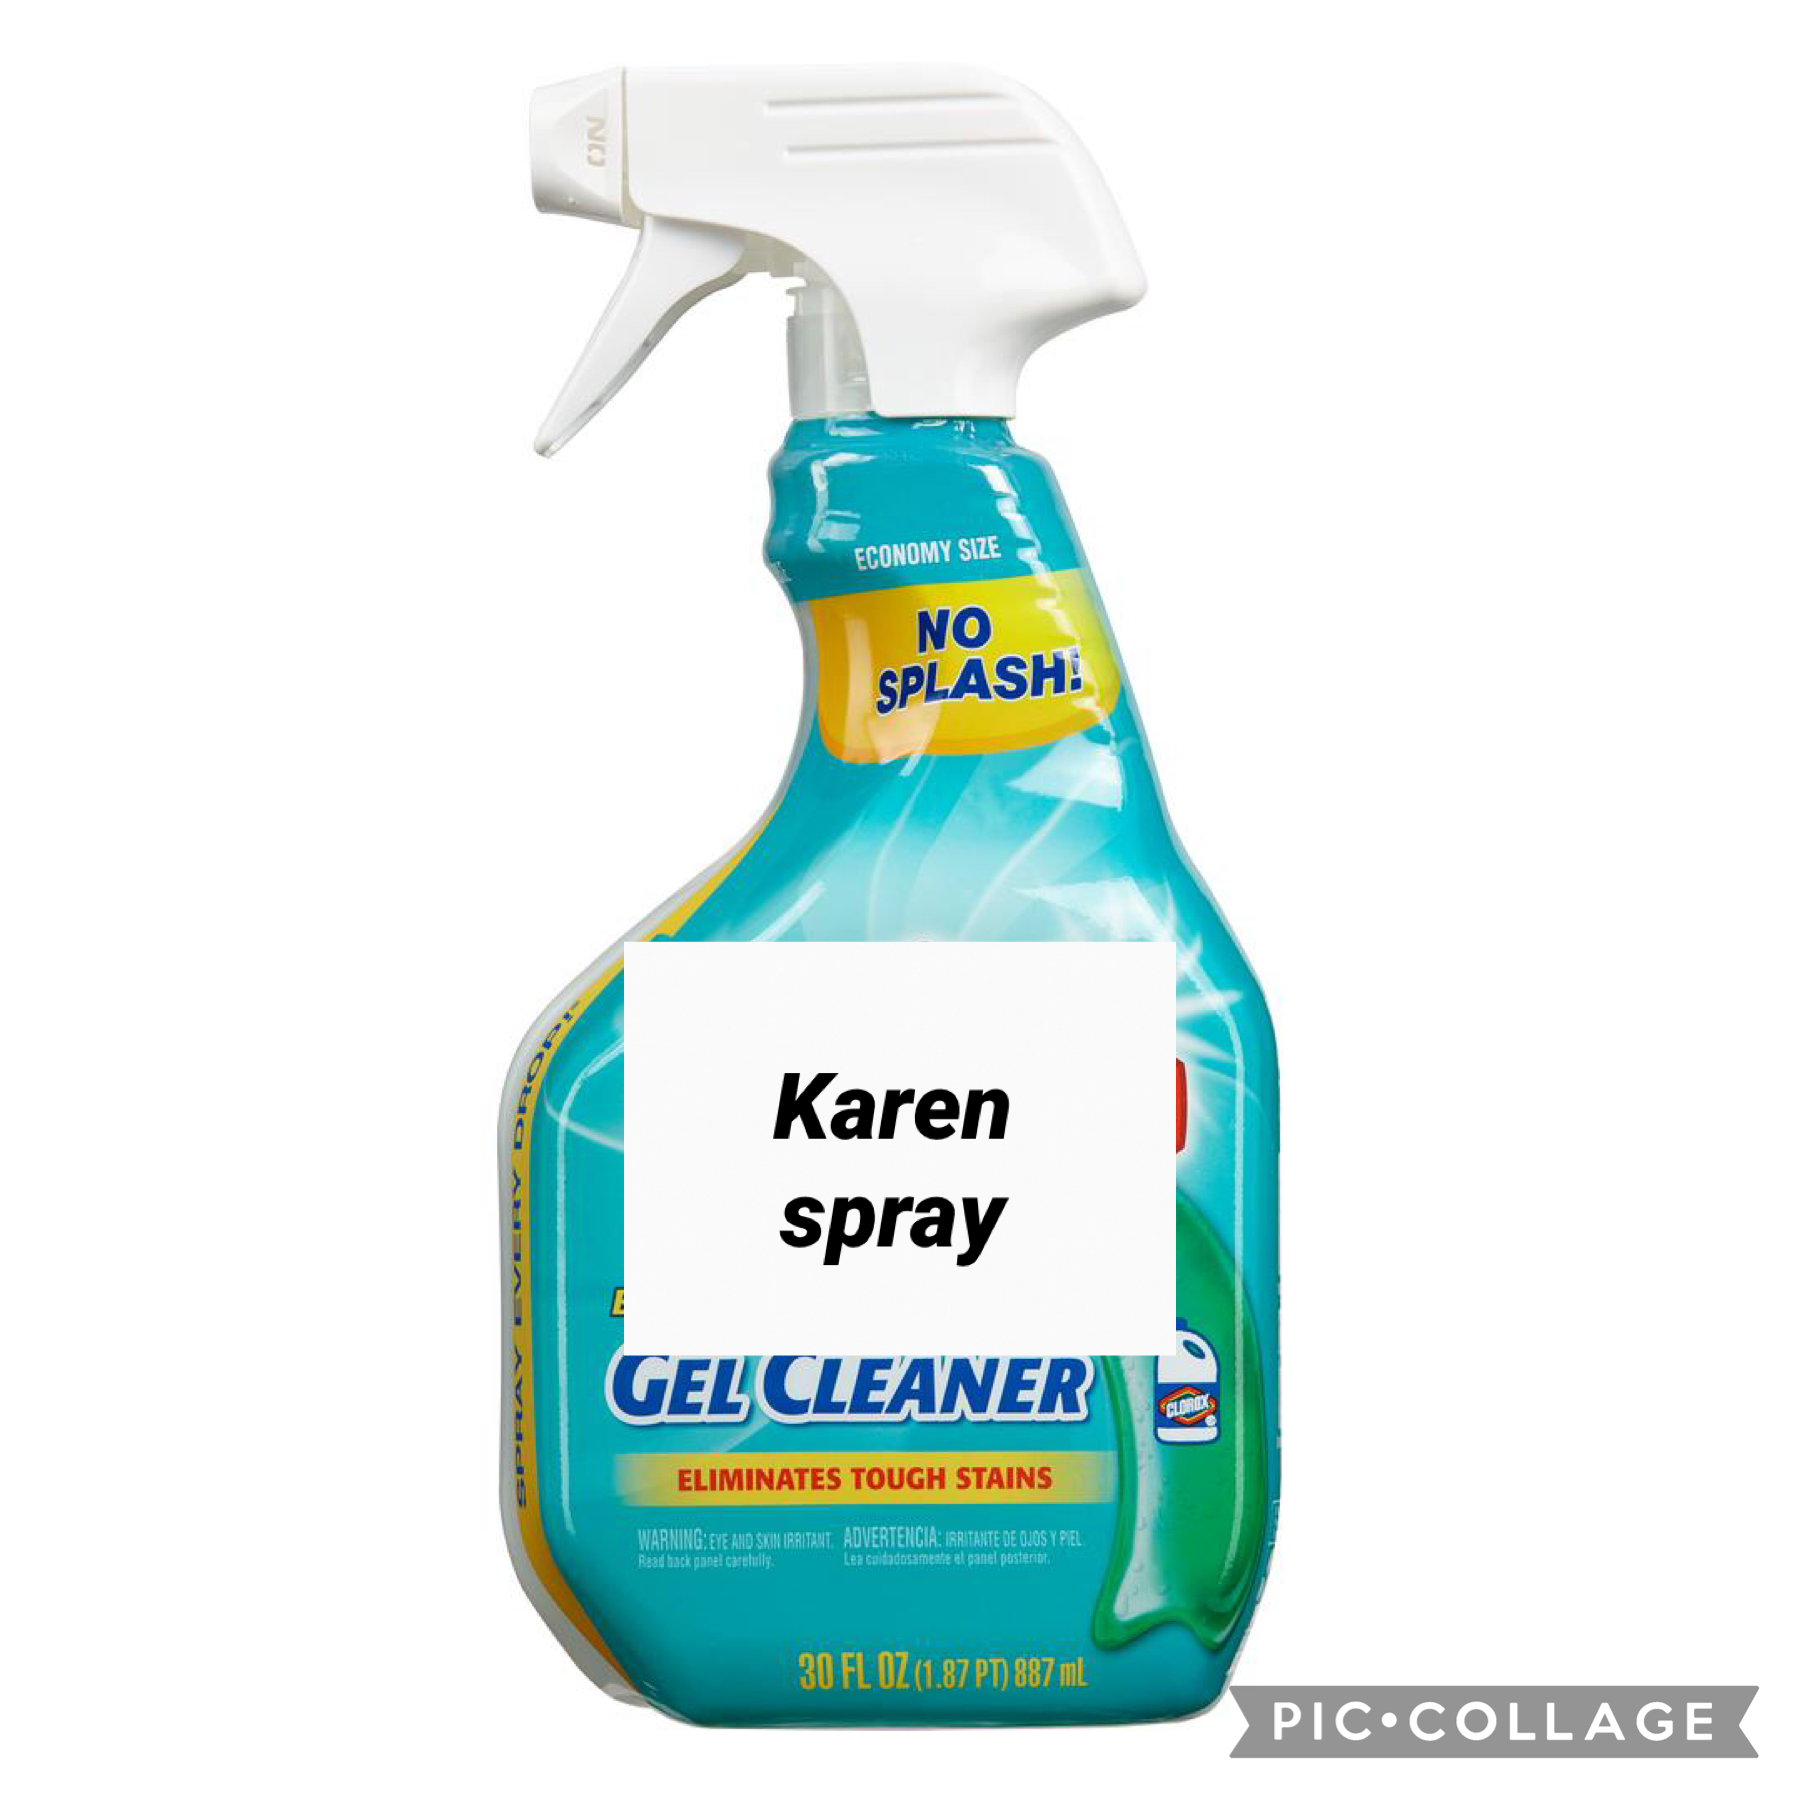 Karen spray for 4.50$